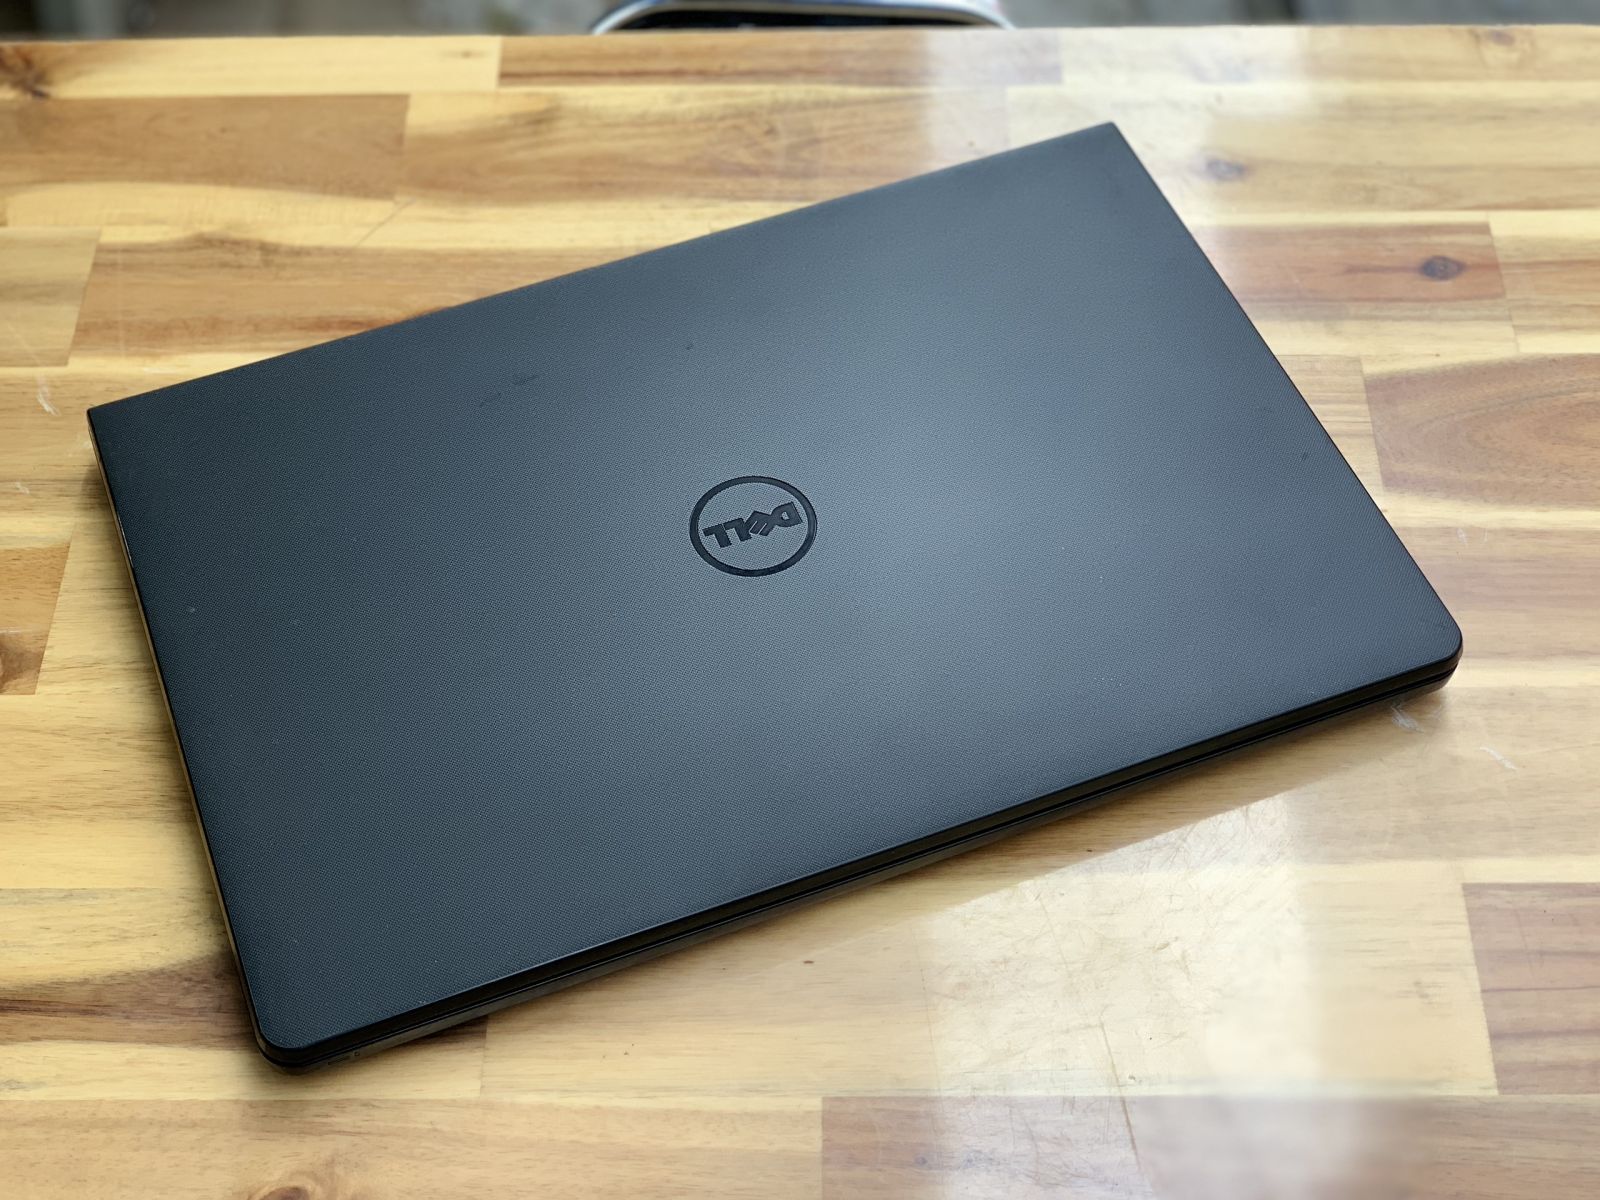 Laptop Dell Inspiron 5558, i7 5500U 8G 128+500G Vga rời 4G Đèn phím Đẹp zin 100% Giá rẻ1